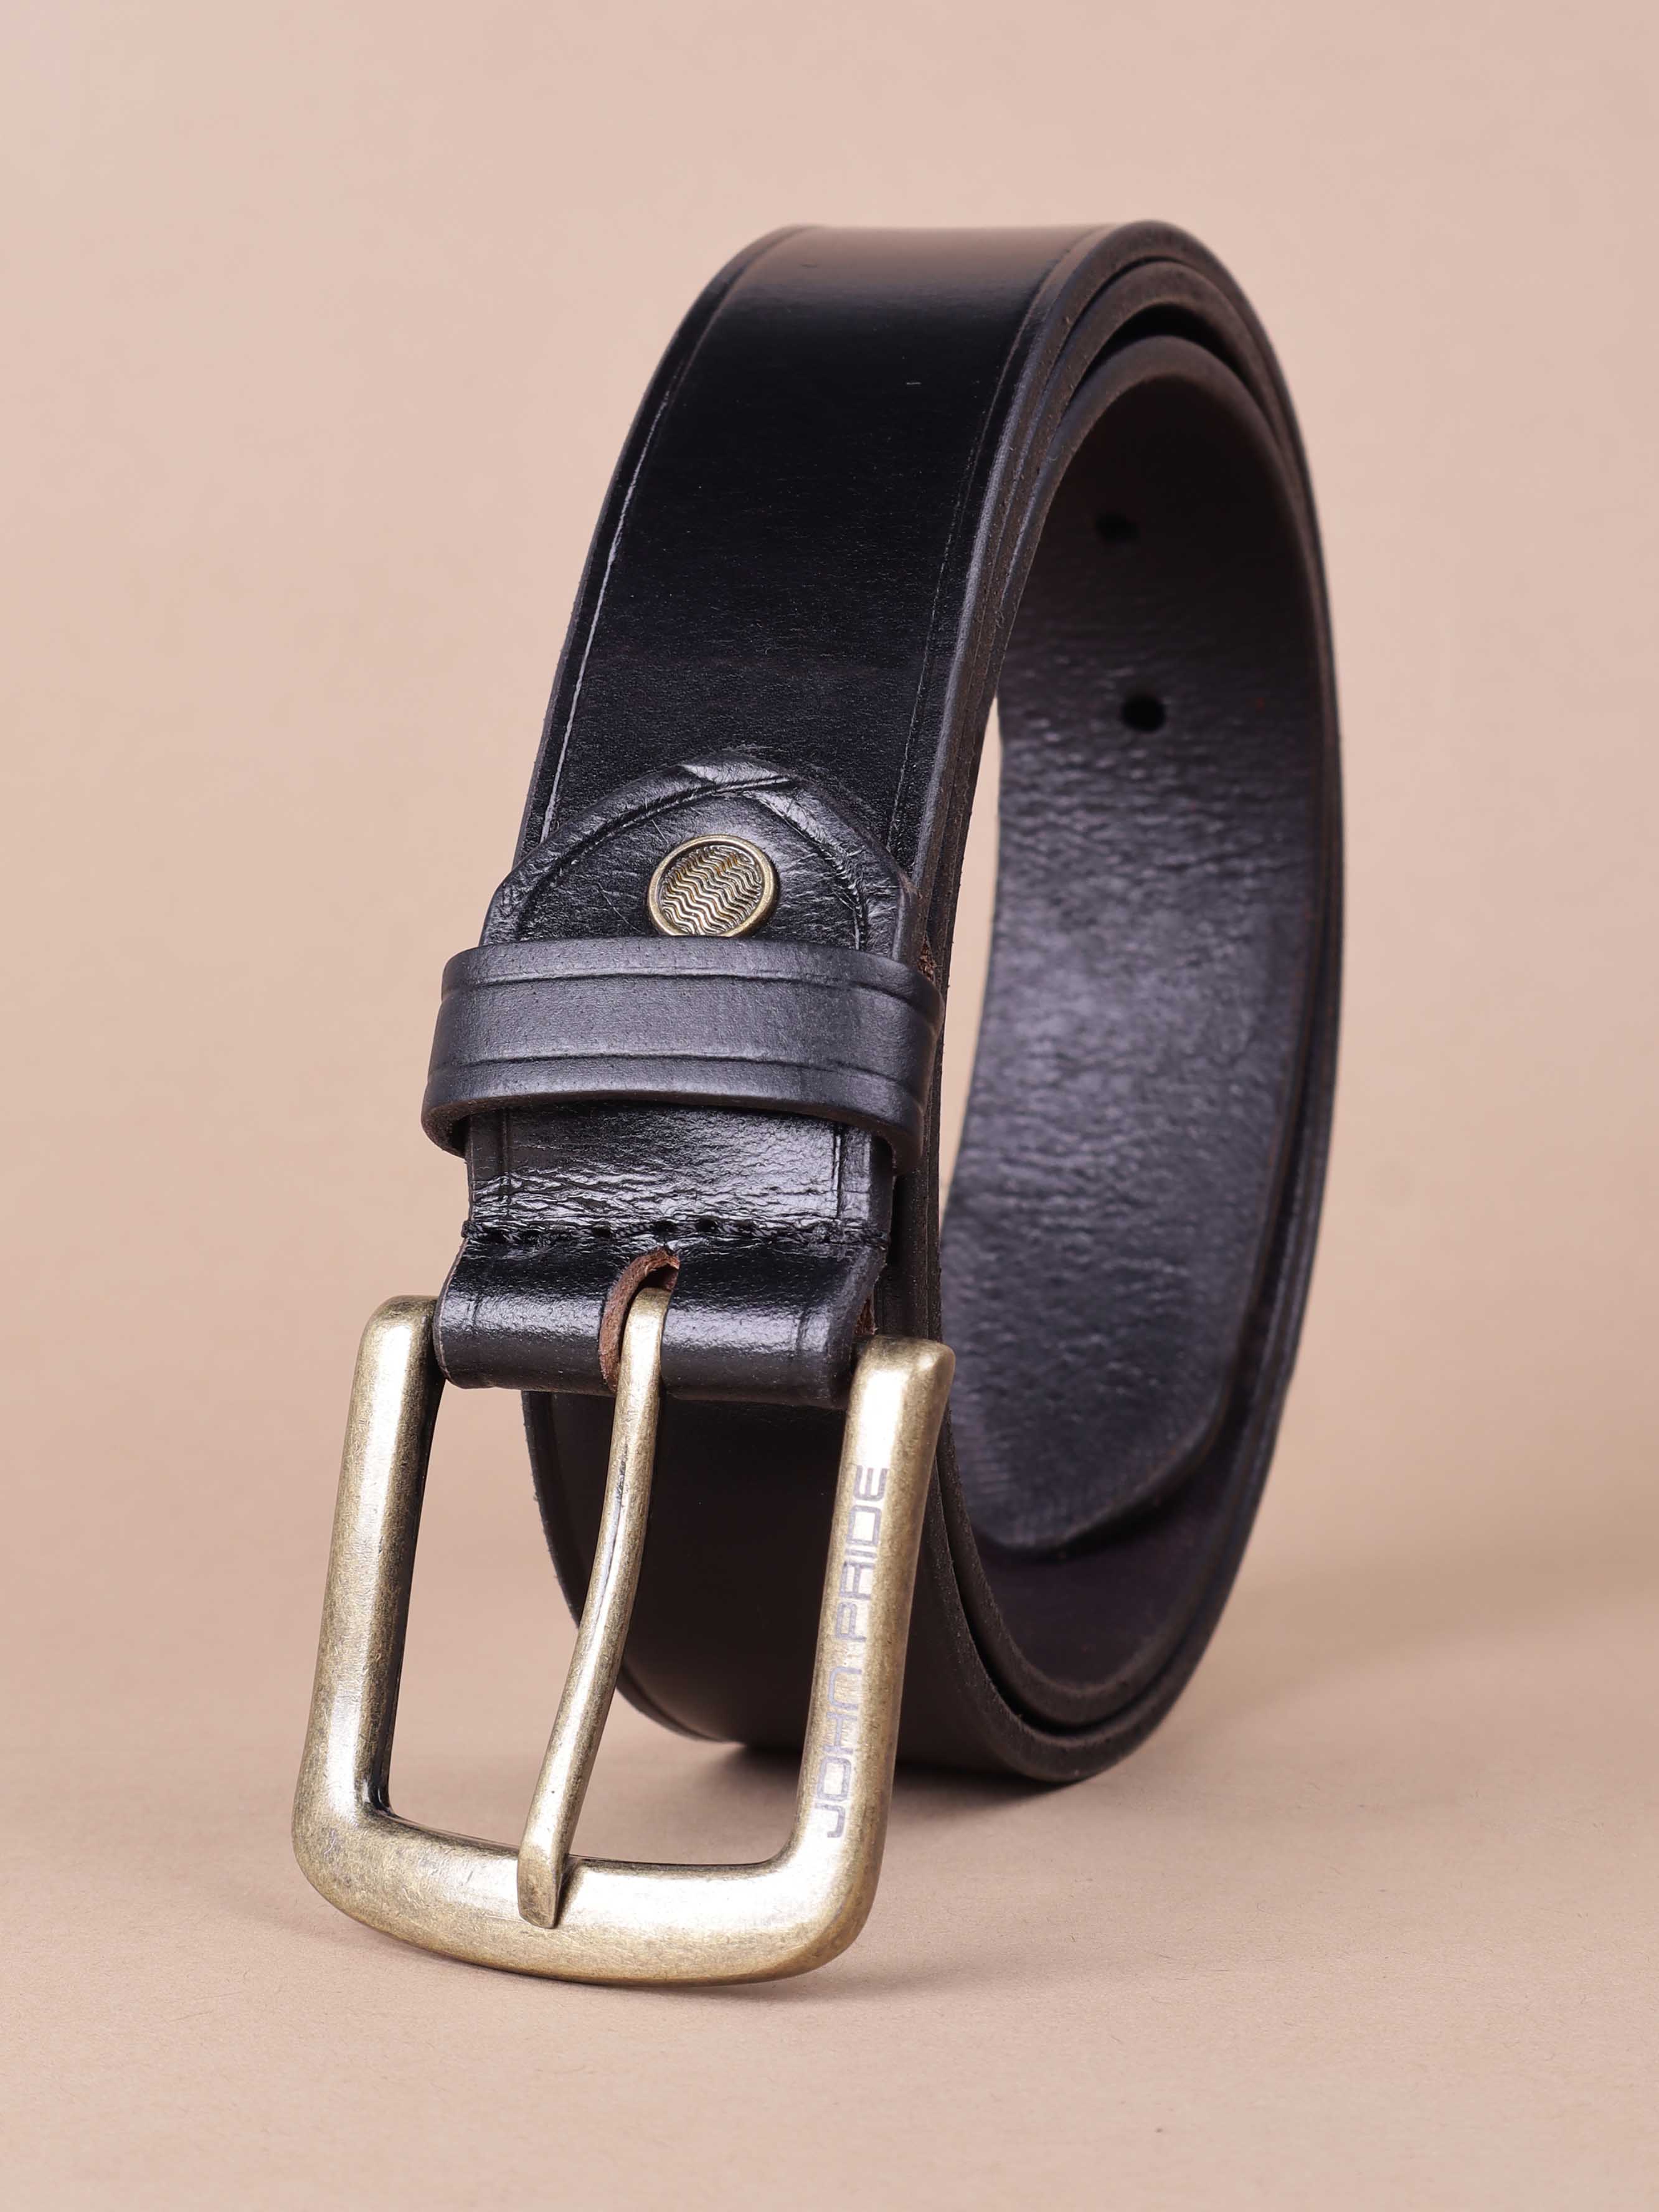 accessories/belts/JPBT1001/jpbt1001-5.jpg